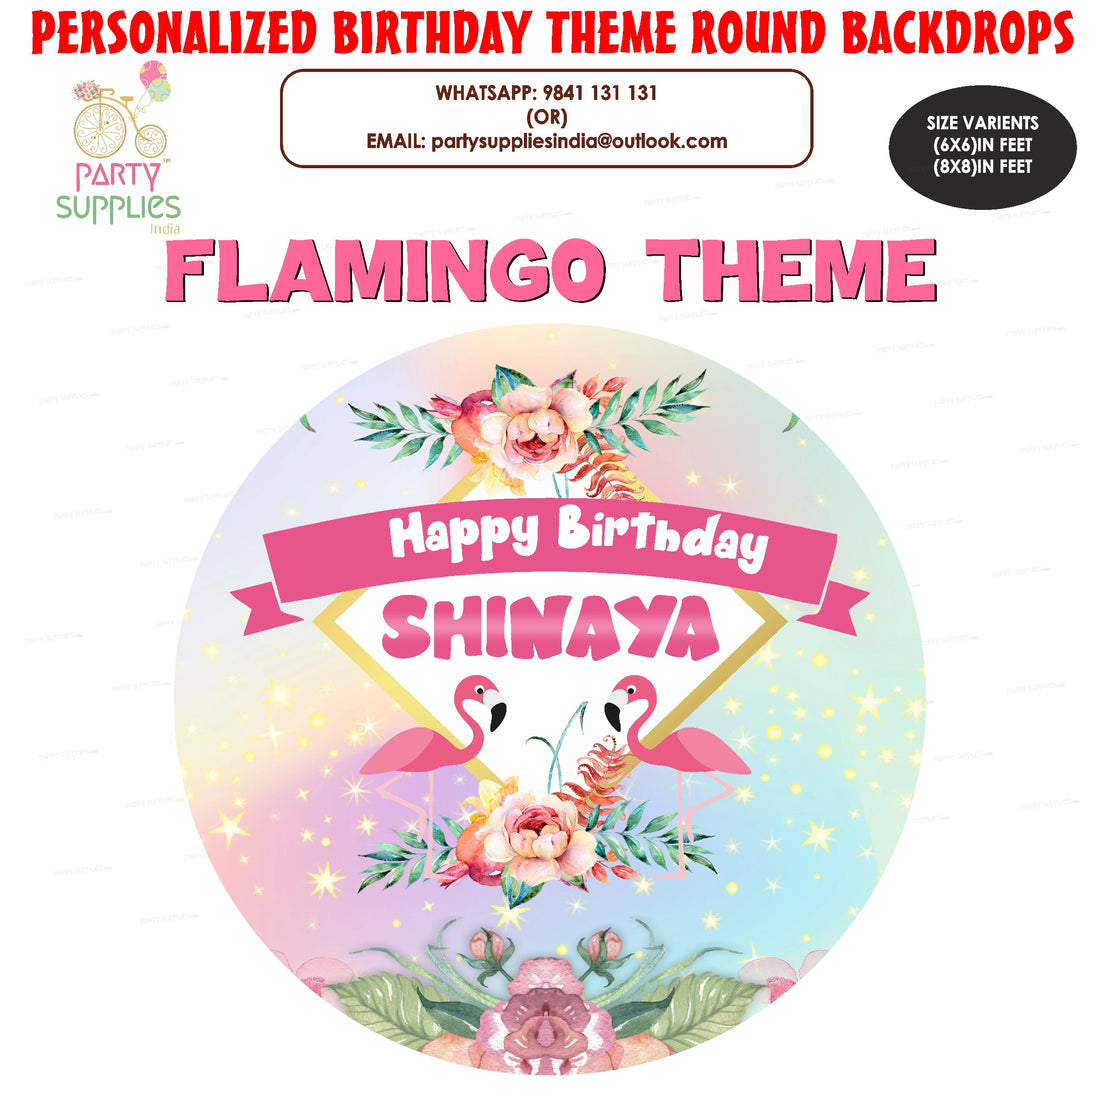 PSI Flamingo Theme Classic Round Backdrop